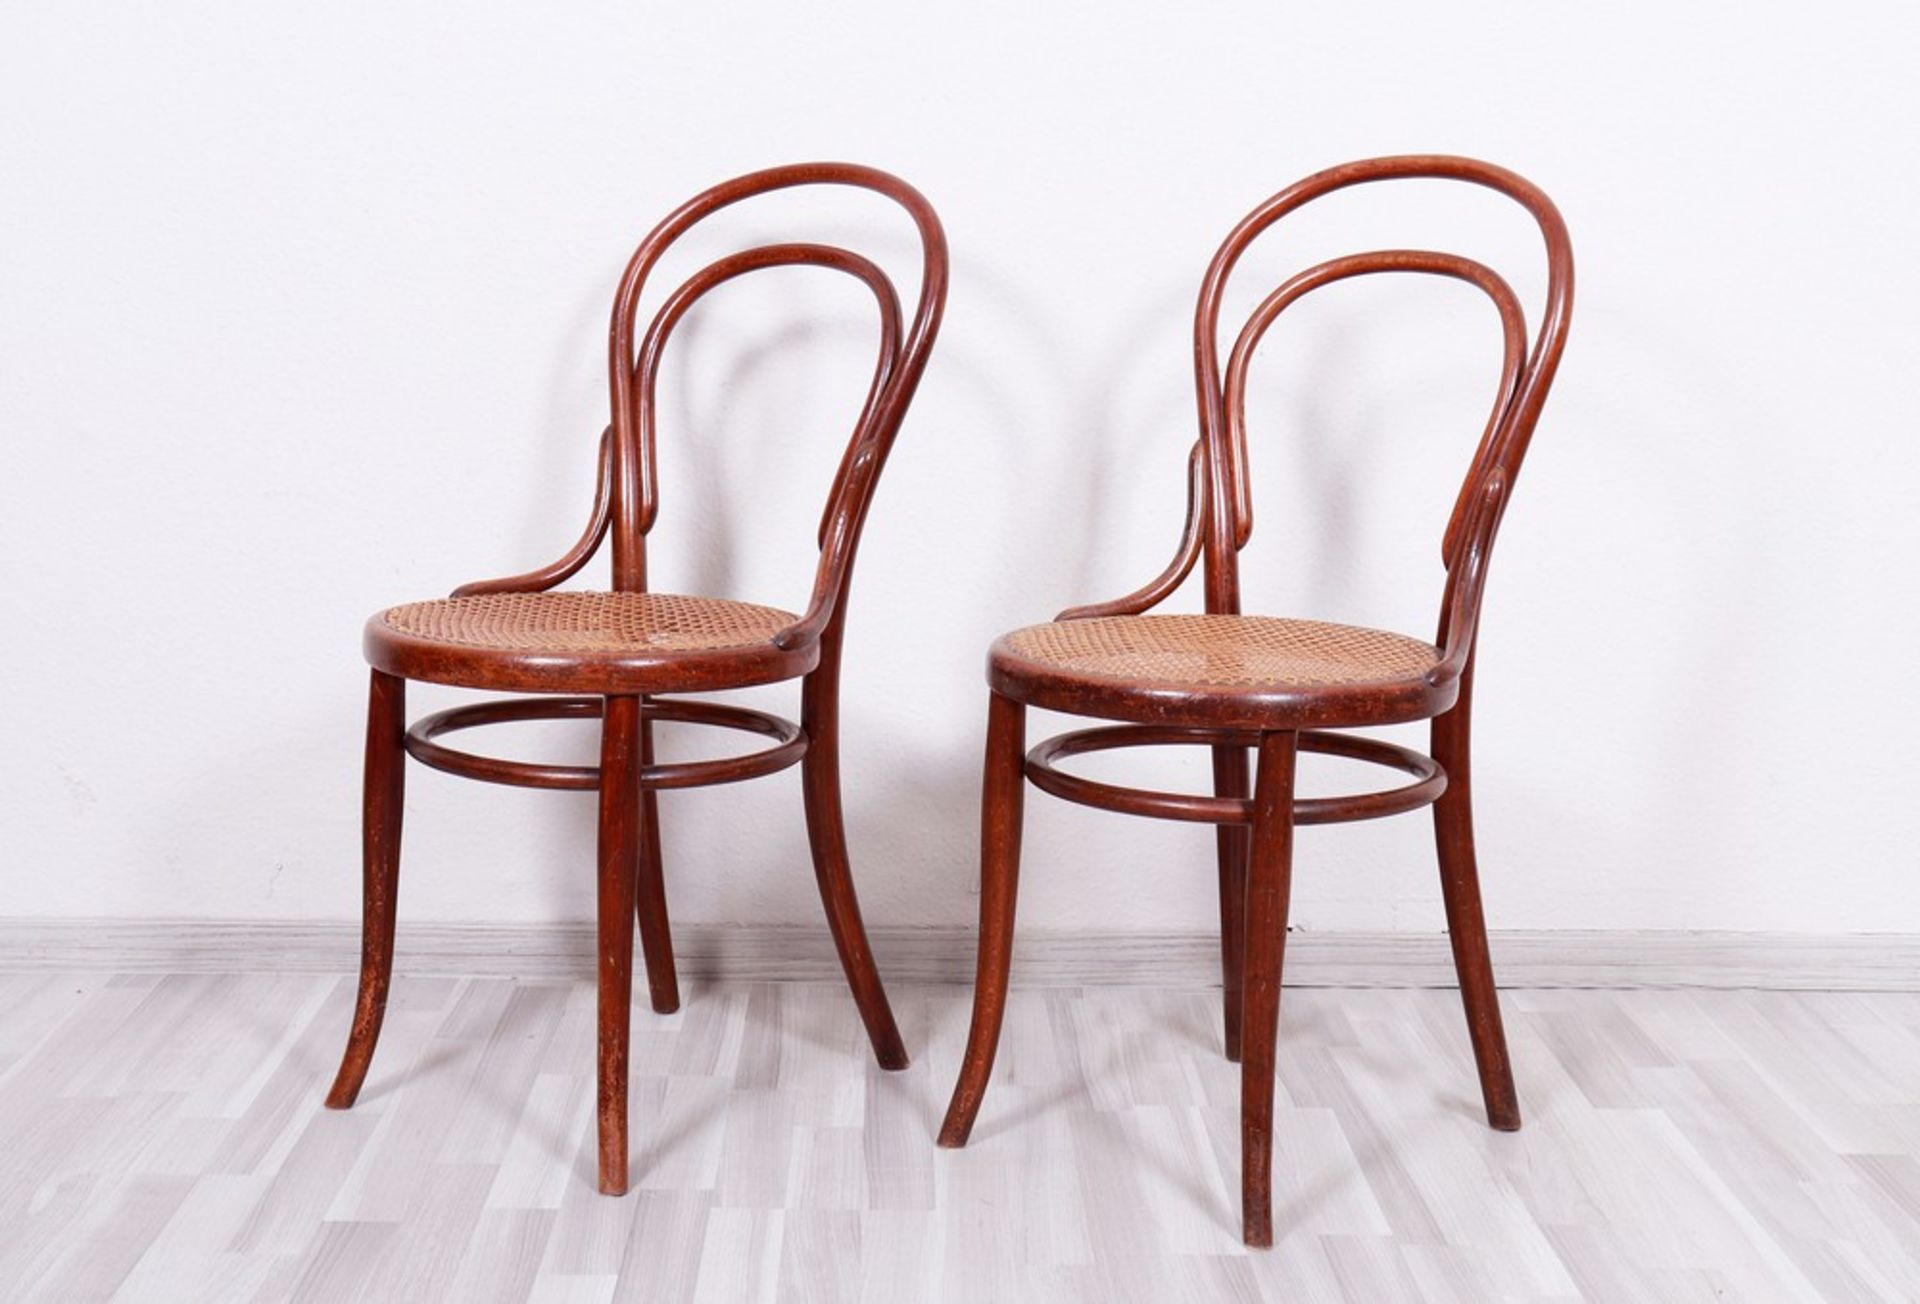 Paar Stühle, Thonet, Wien, um 1900 - Bild 2 aus 5